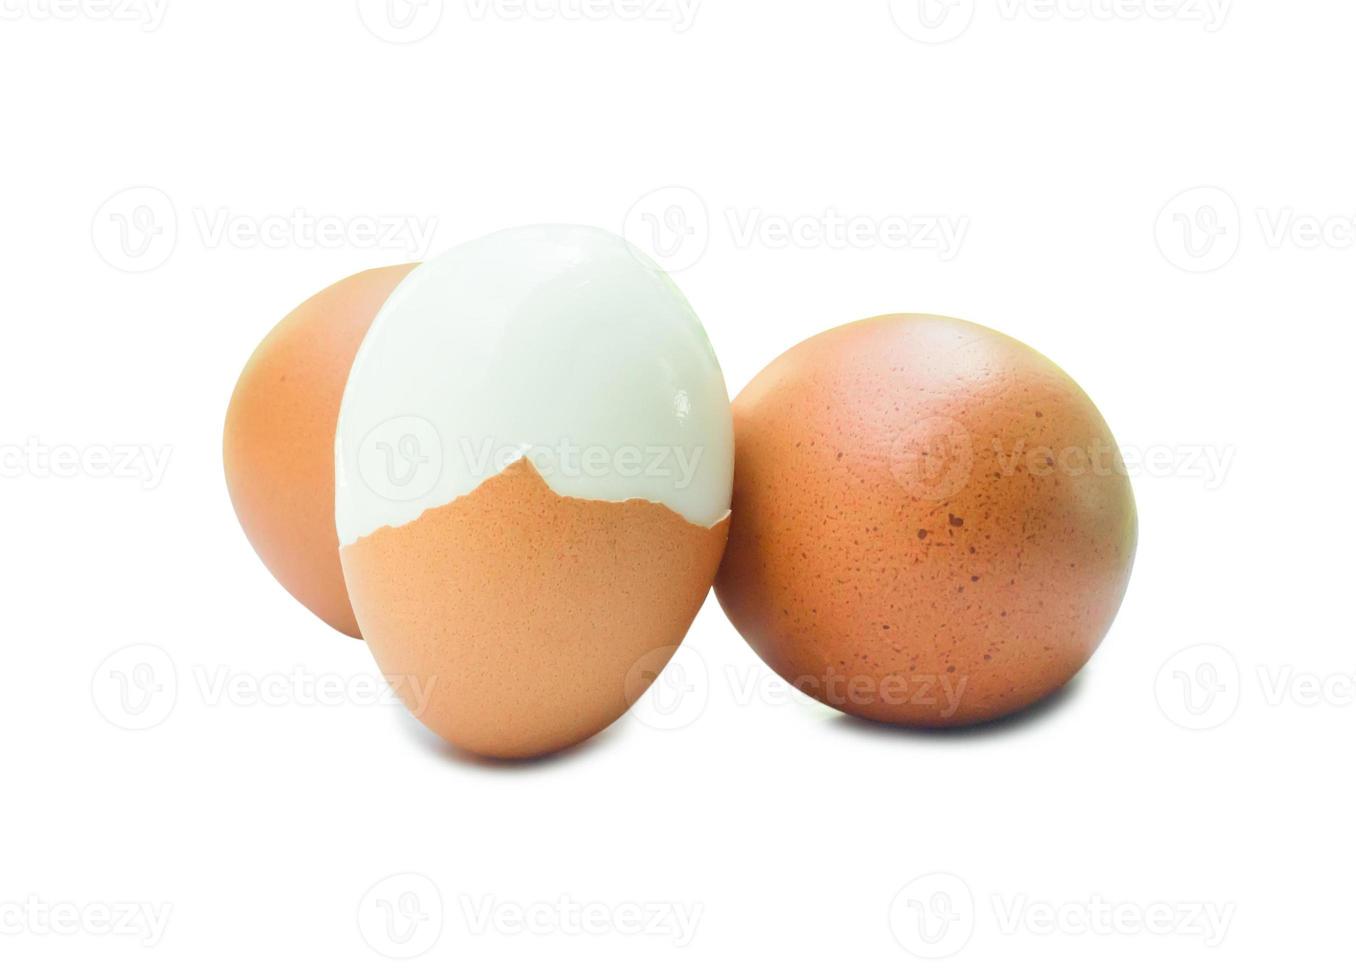 três ovos de galinha marrons frescos com uma metade descascada isolada no fundo branco com traçado de recorte, conceito de alimentação saudável de alimentos orgânicos foto